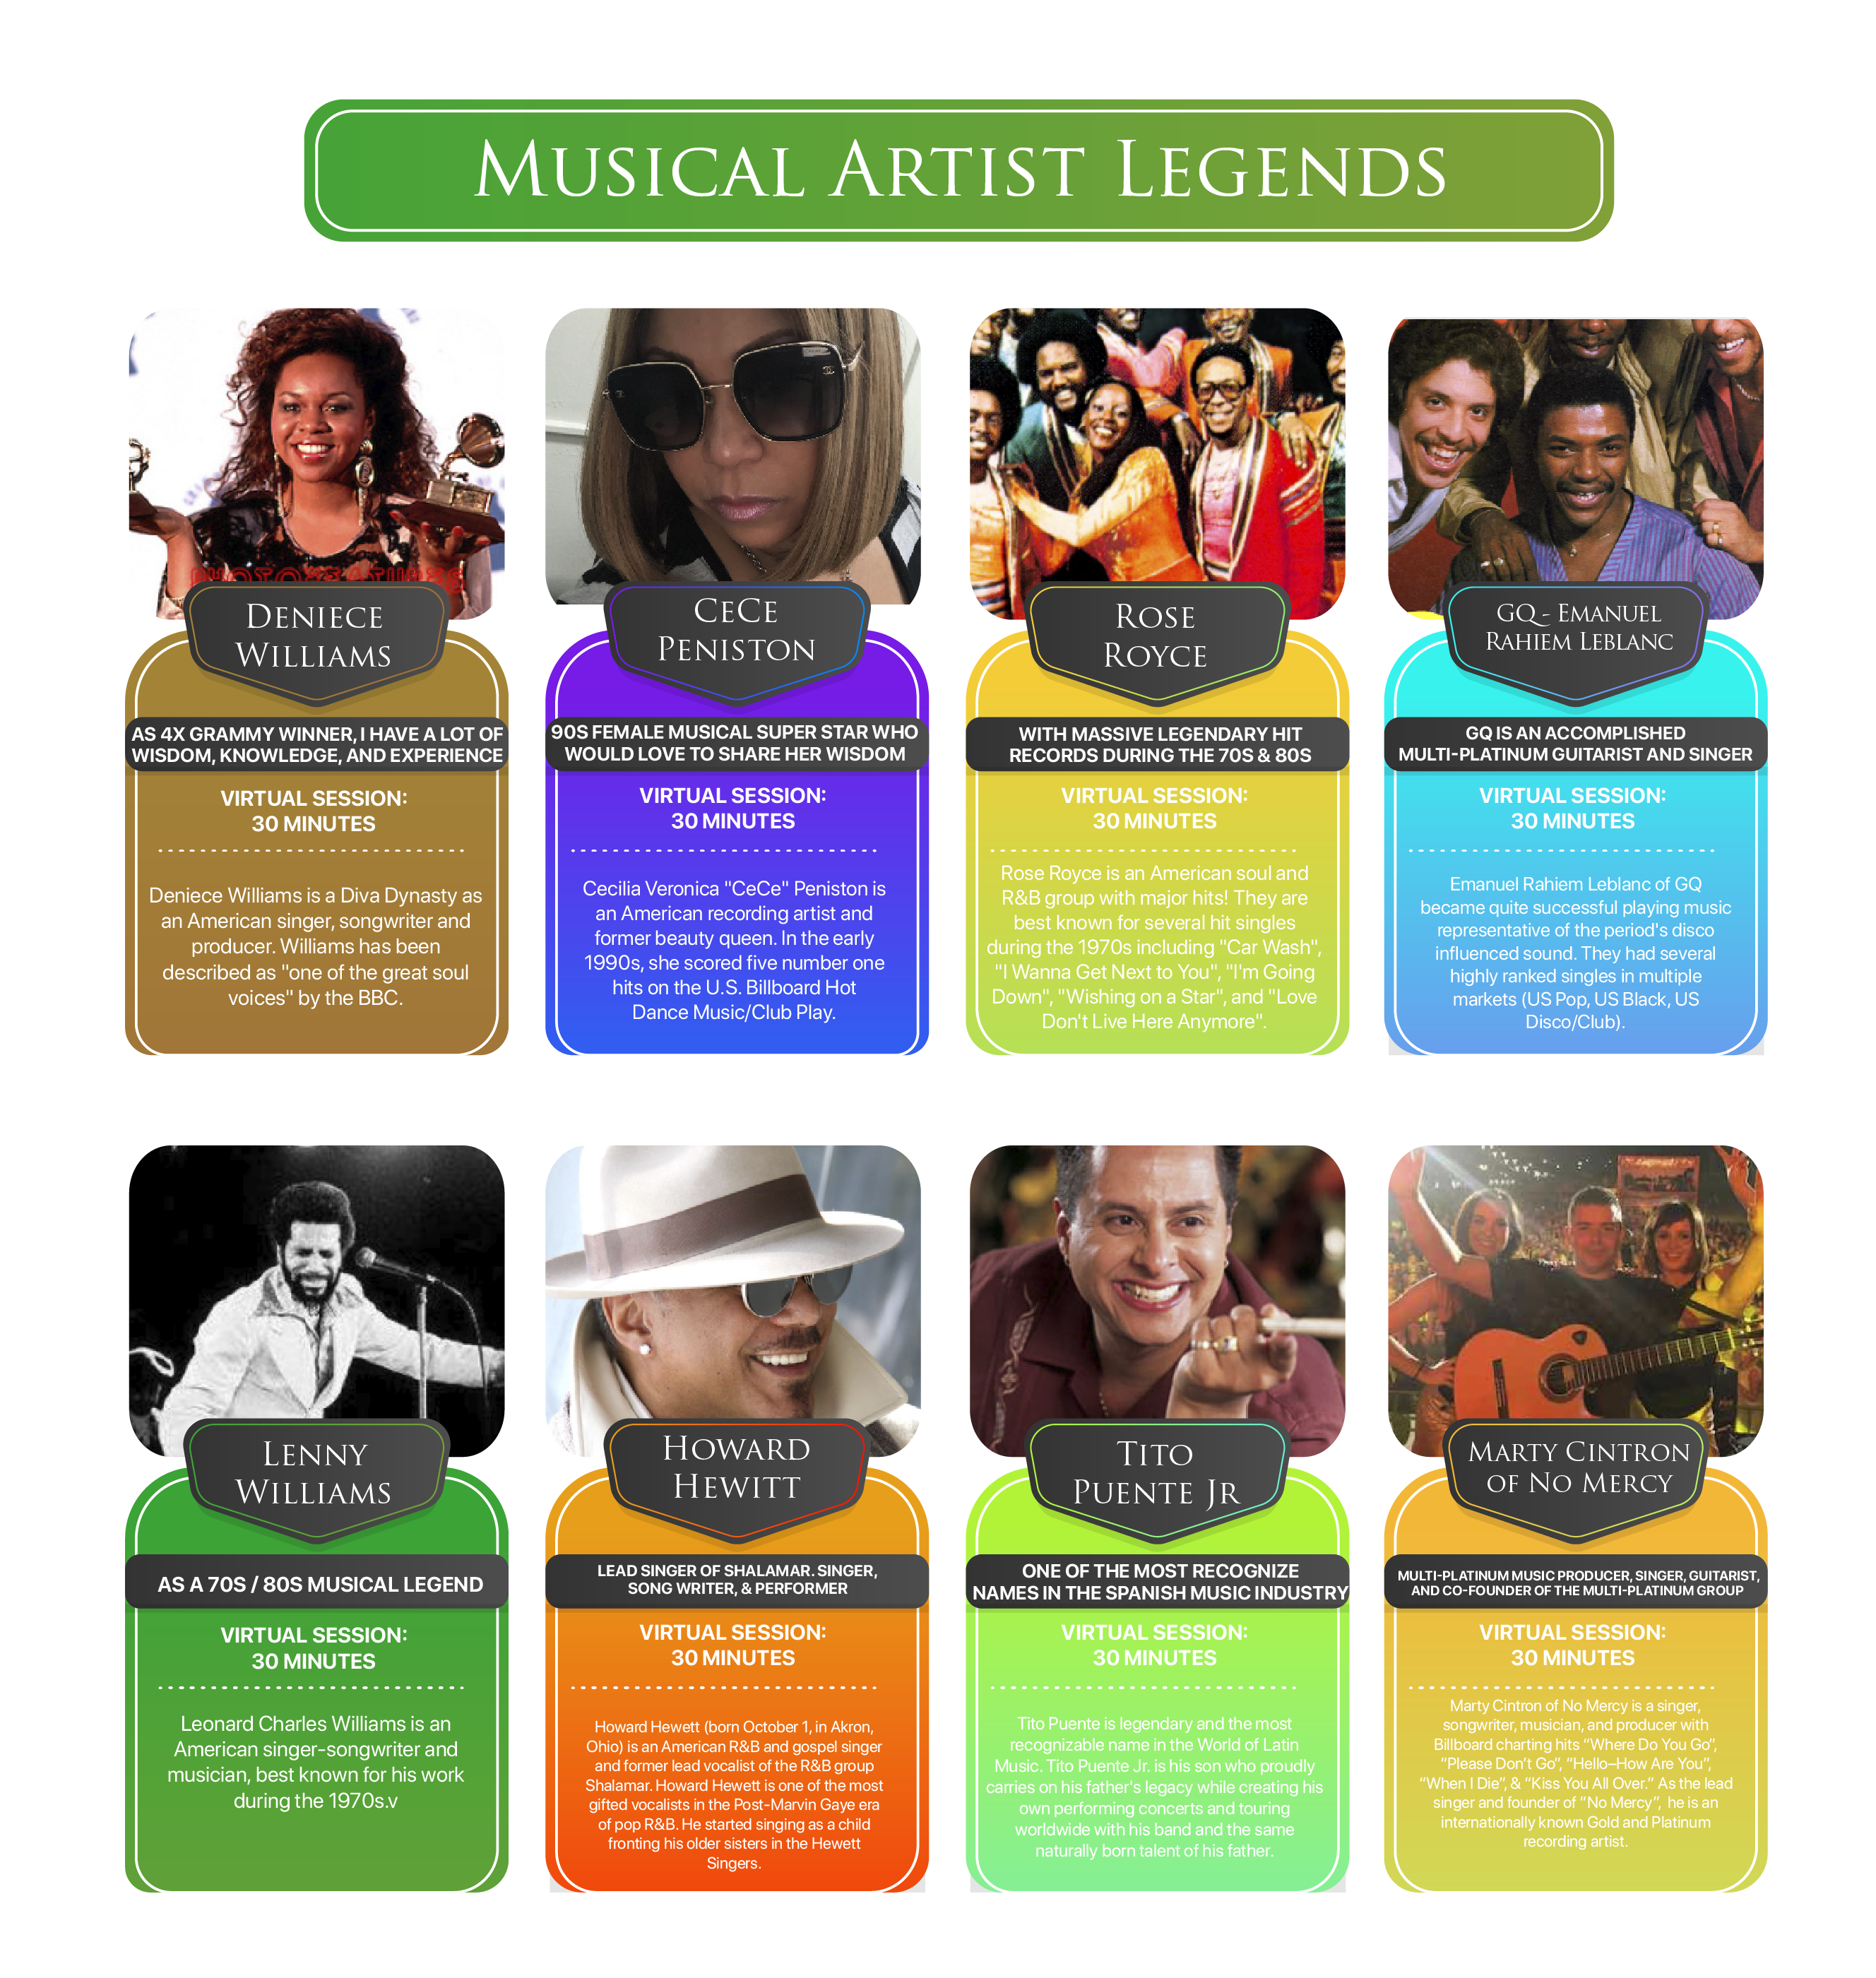 MeetEm music artists legends